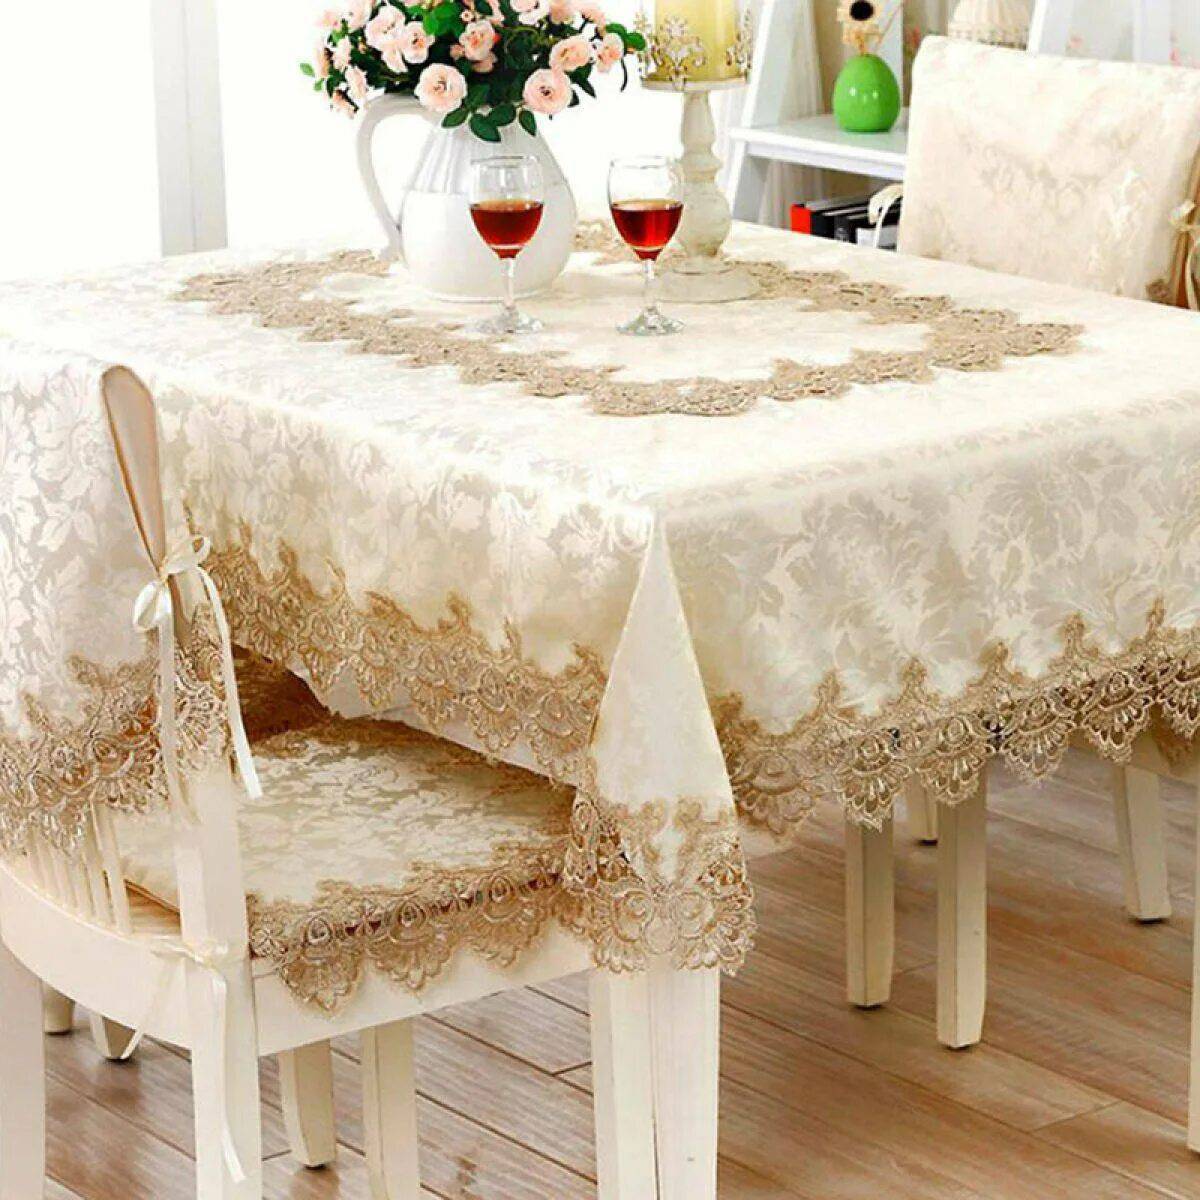 Tablecloth скатерть турецкая